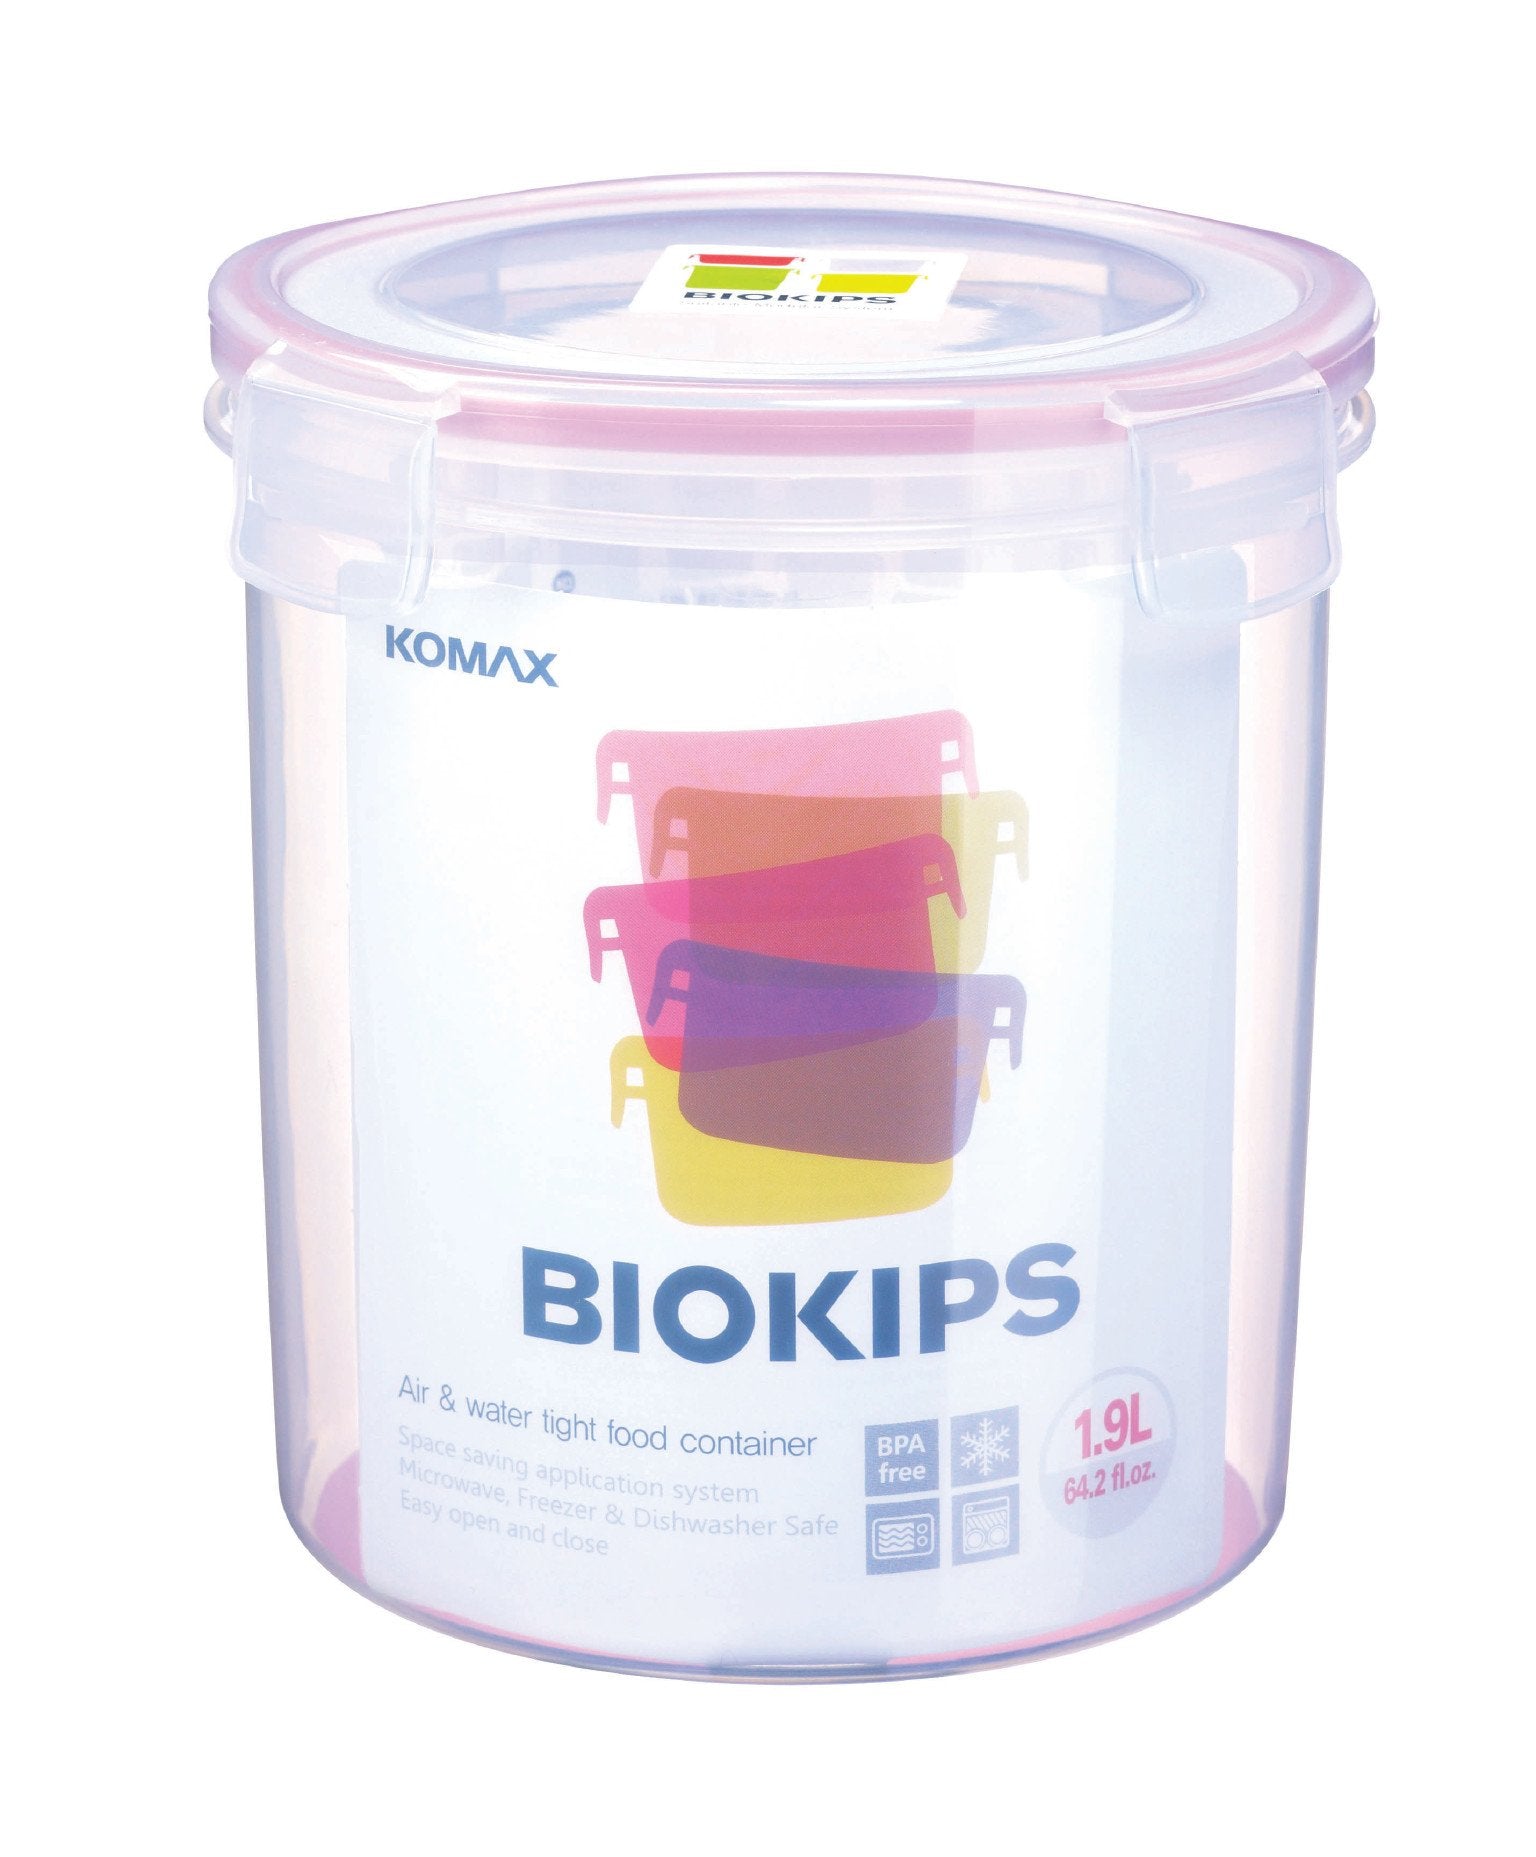 Komax Biokips Round Food Storage Container, 1.9 L